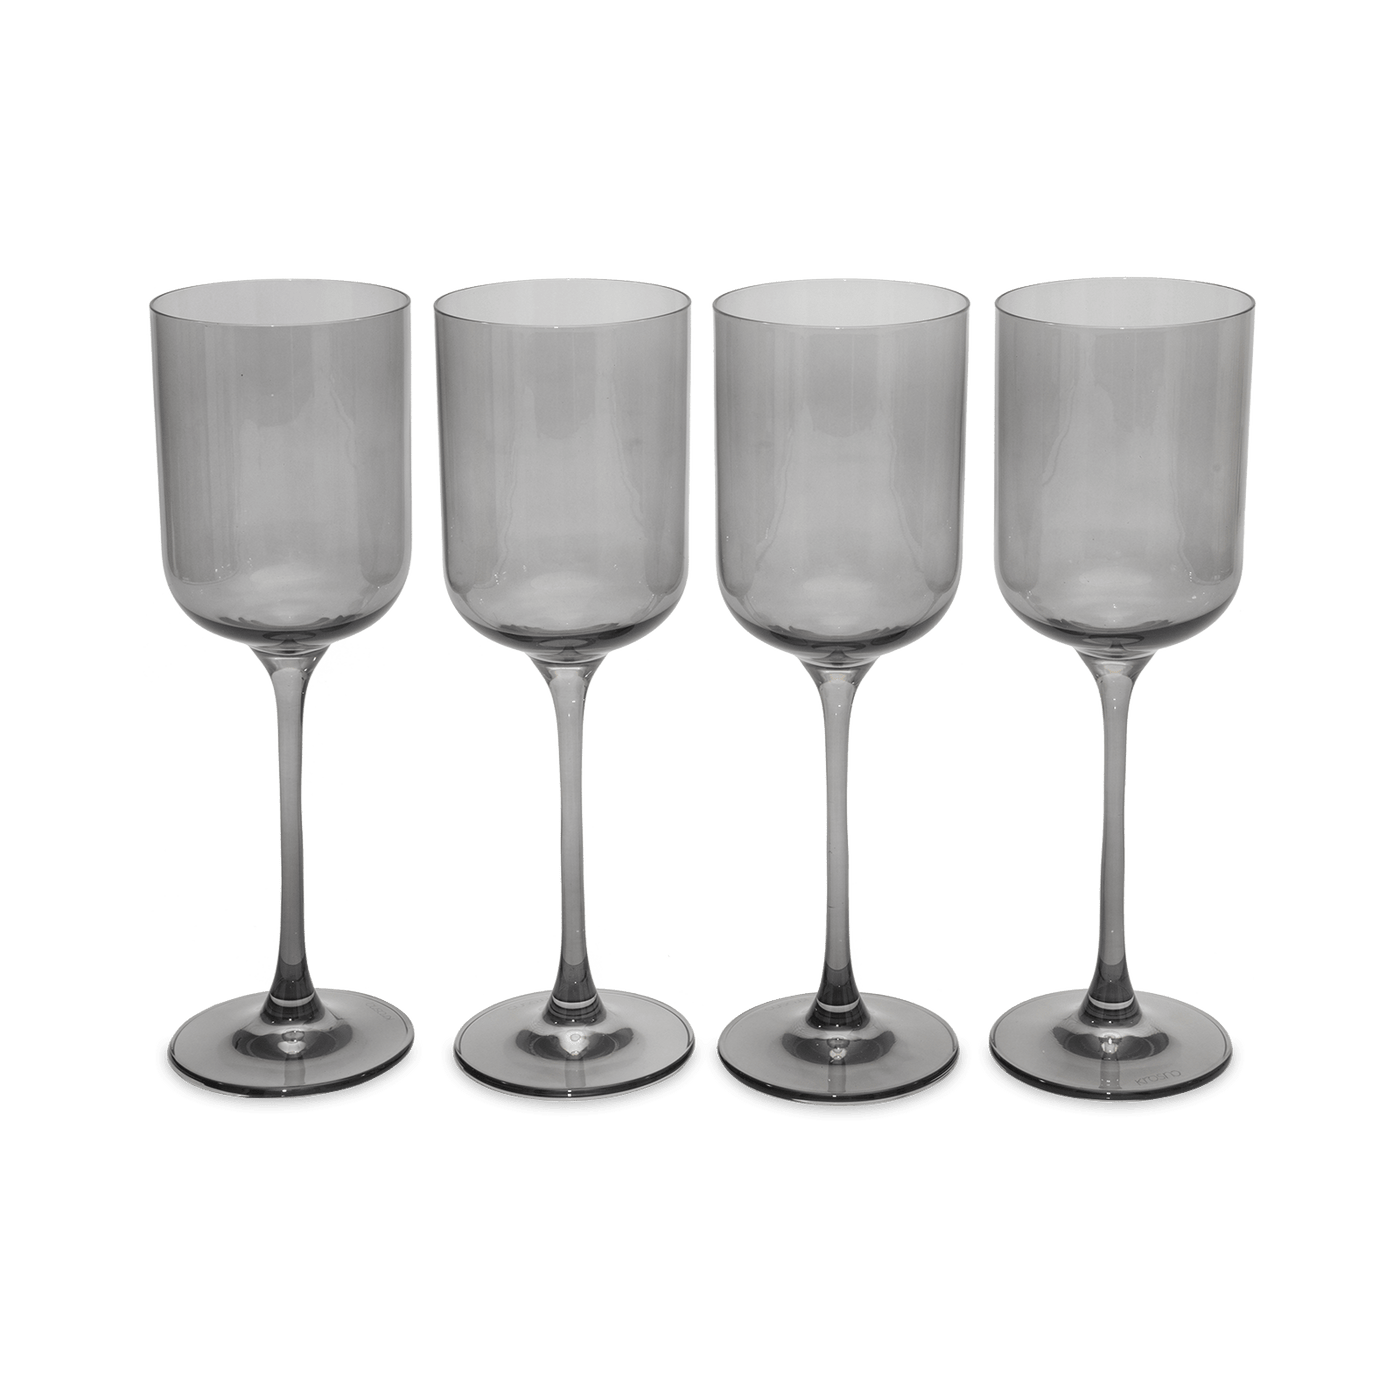 Soho Set of 4 Wine Glasses, Charcoal, 350 ml Glasses & Tumblers sazy.com